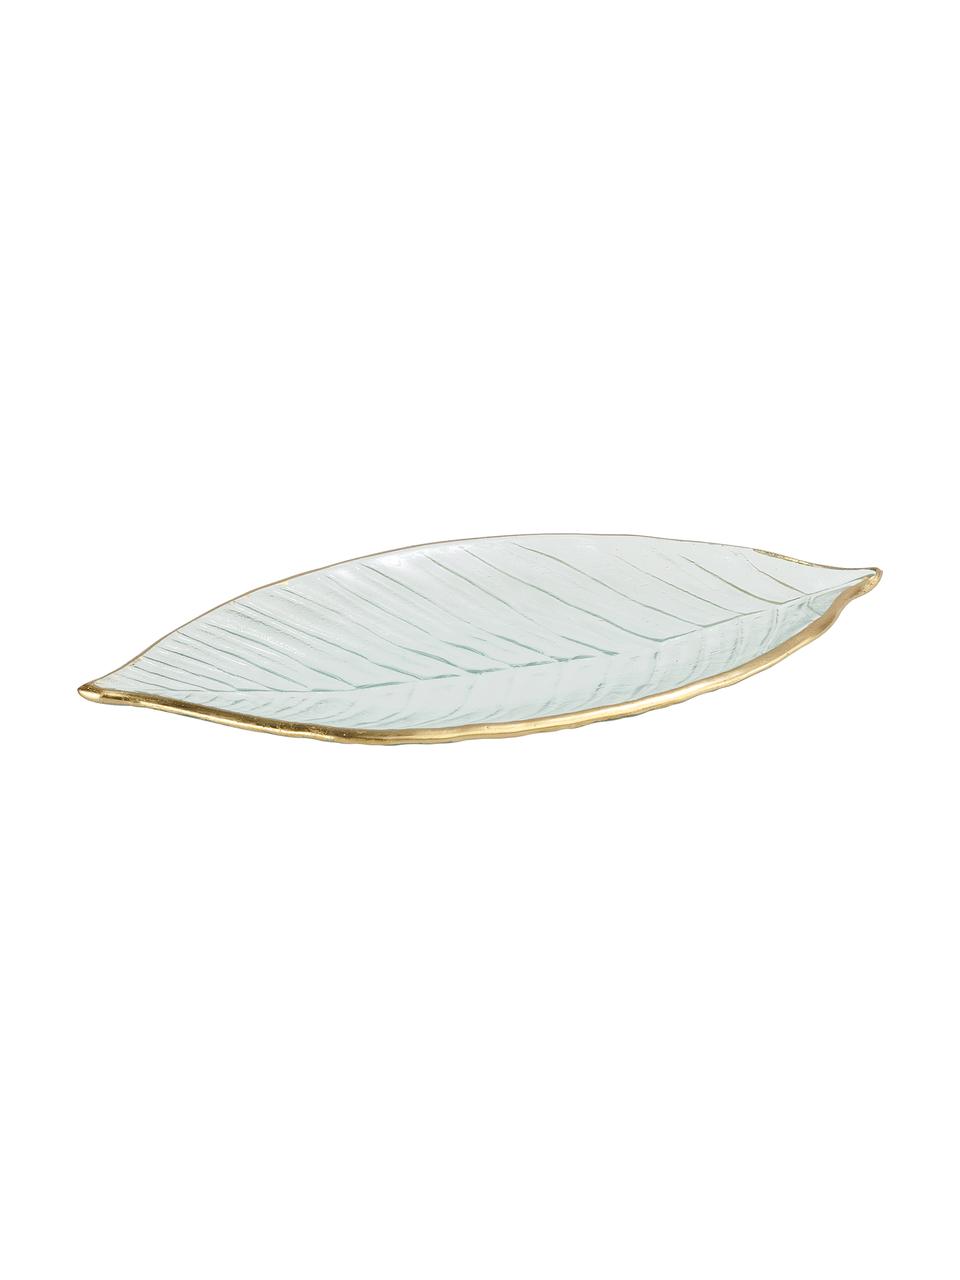 Bol decorativo Leaf, Vidrio, Transparente, dorado, An 30 x F 13 cm